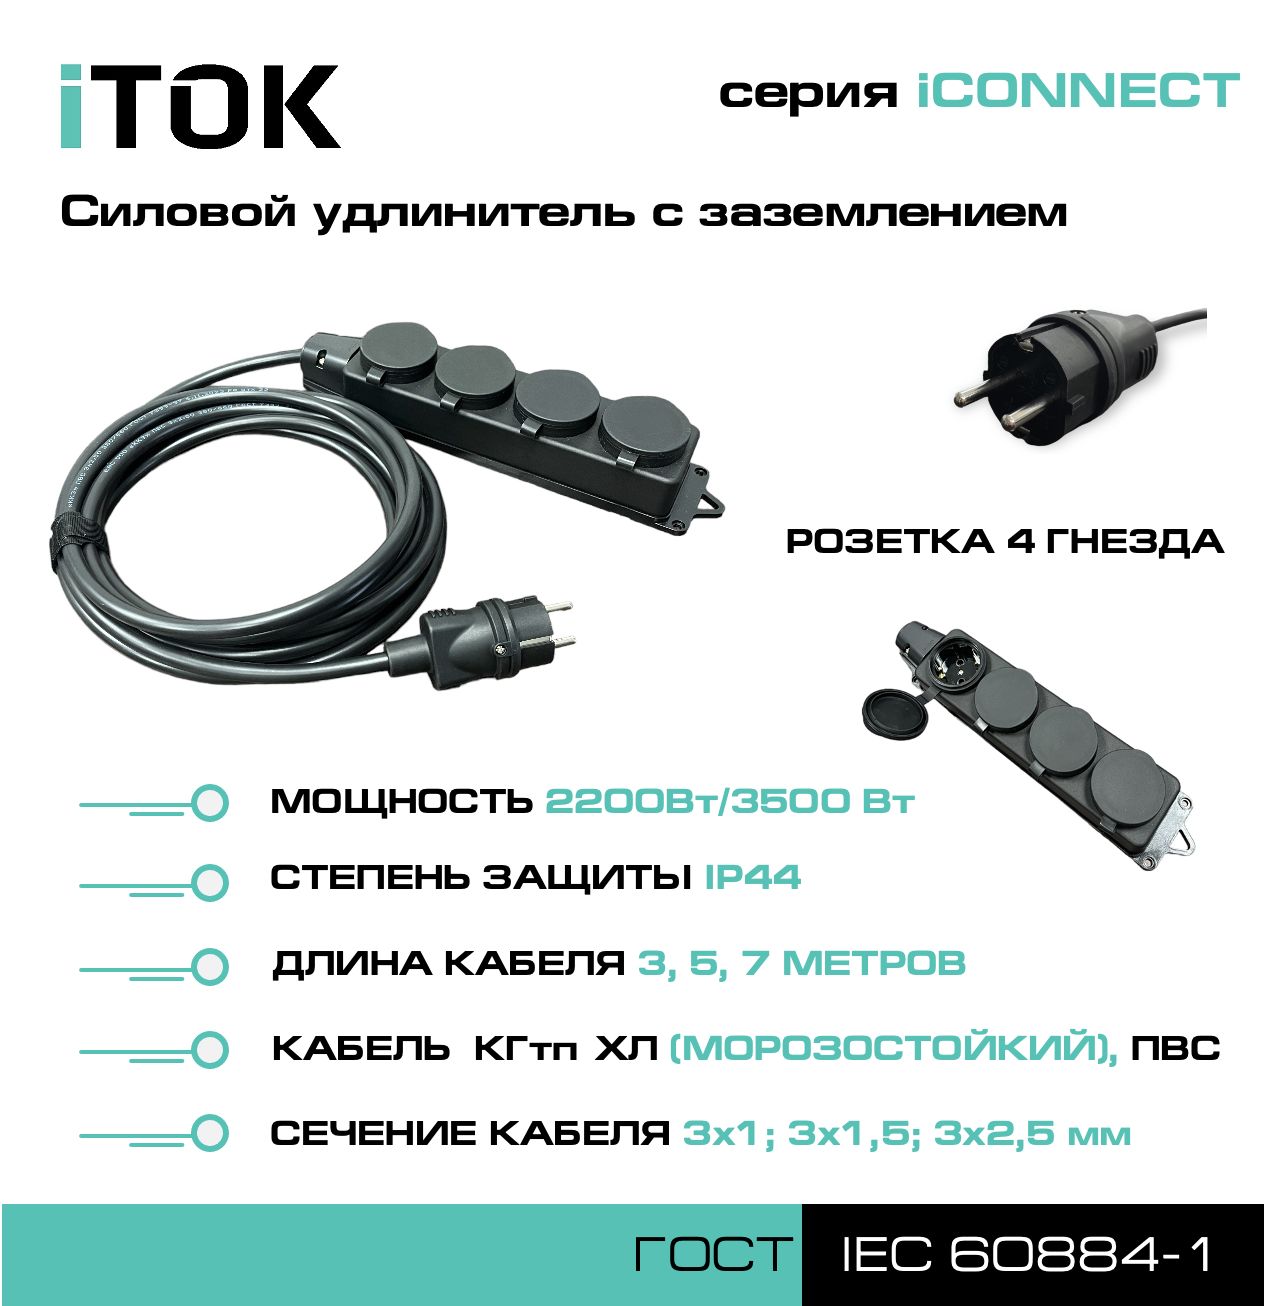 Удлинитель с заземлением серии iTOK iCONNECT ПВС 3х1 мм 4 гнезда IP44 7 м